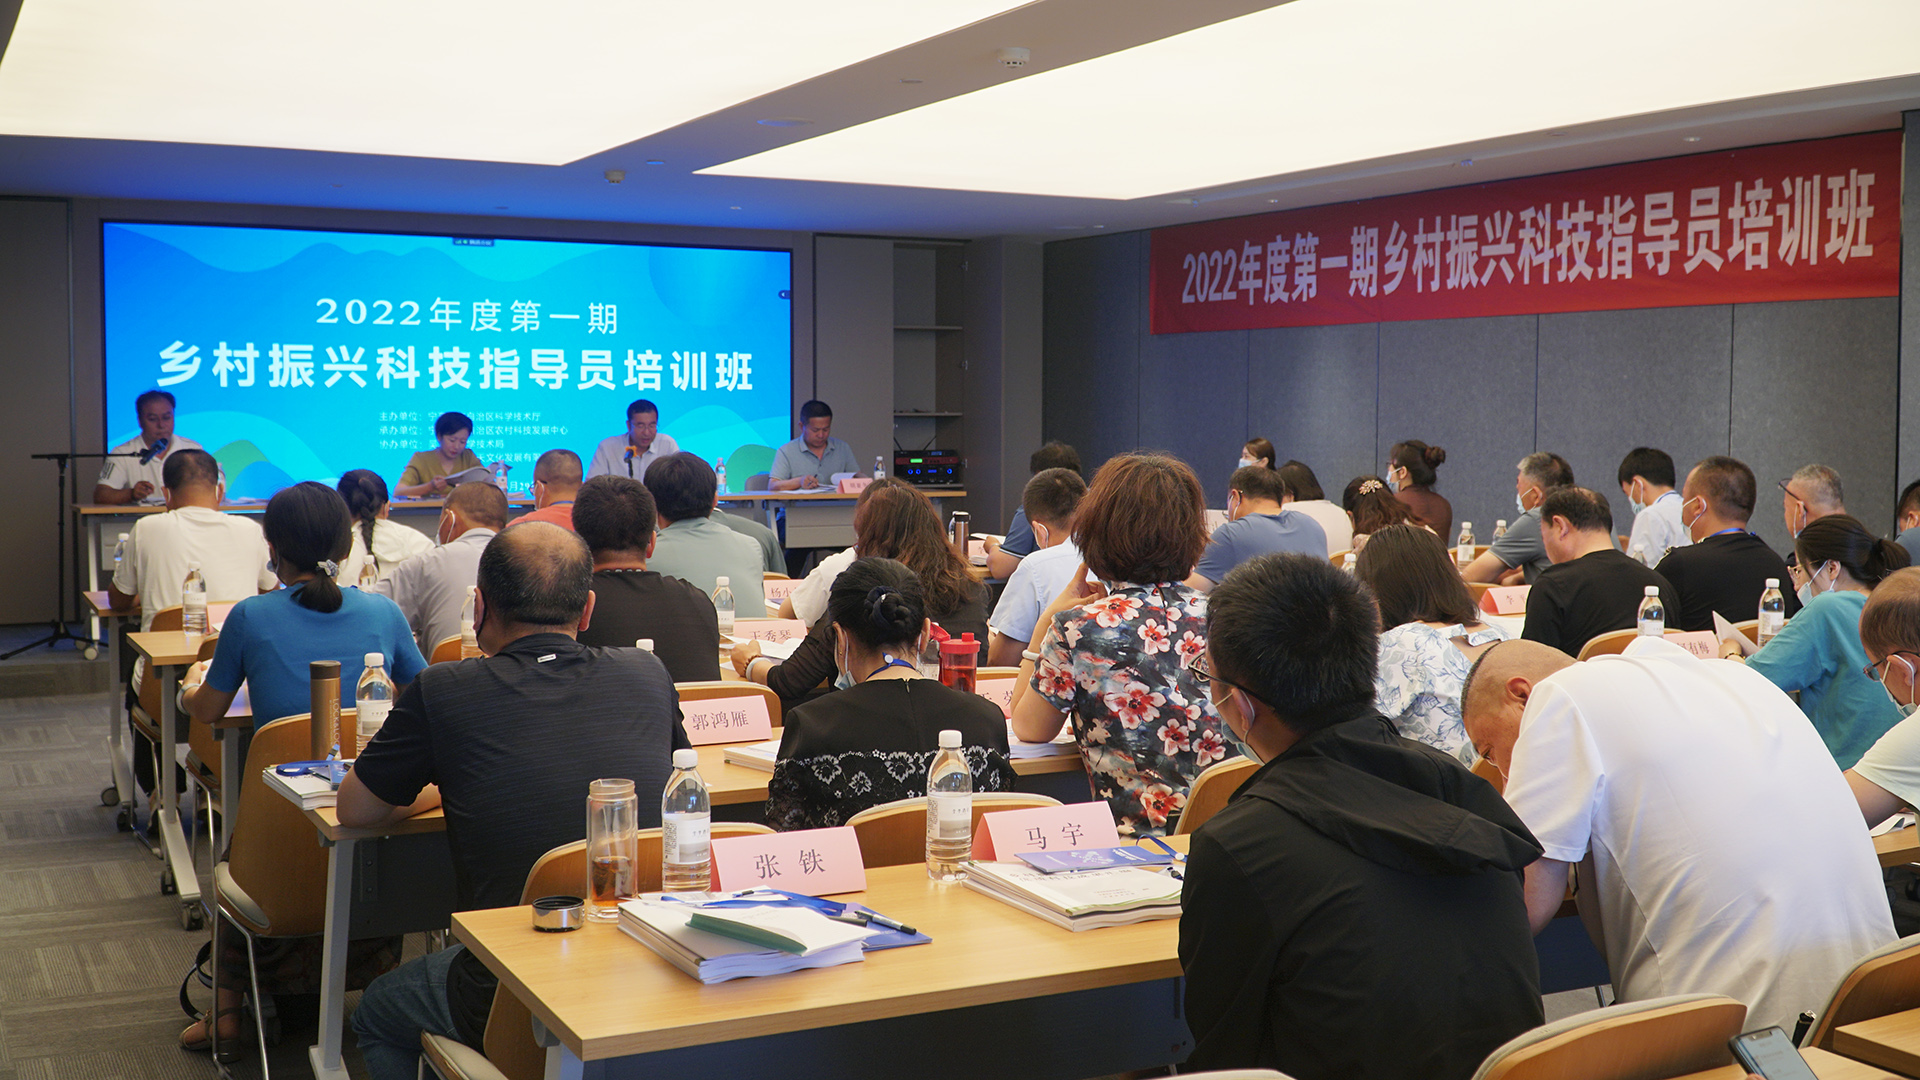 2022年度第一期乡村振兴科技指导员培训班在吴忠举办